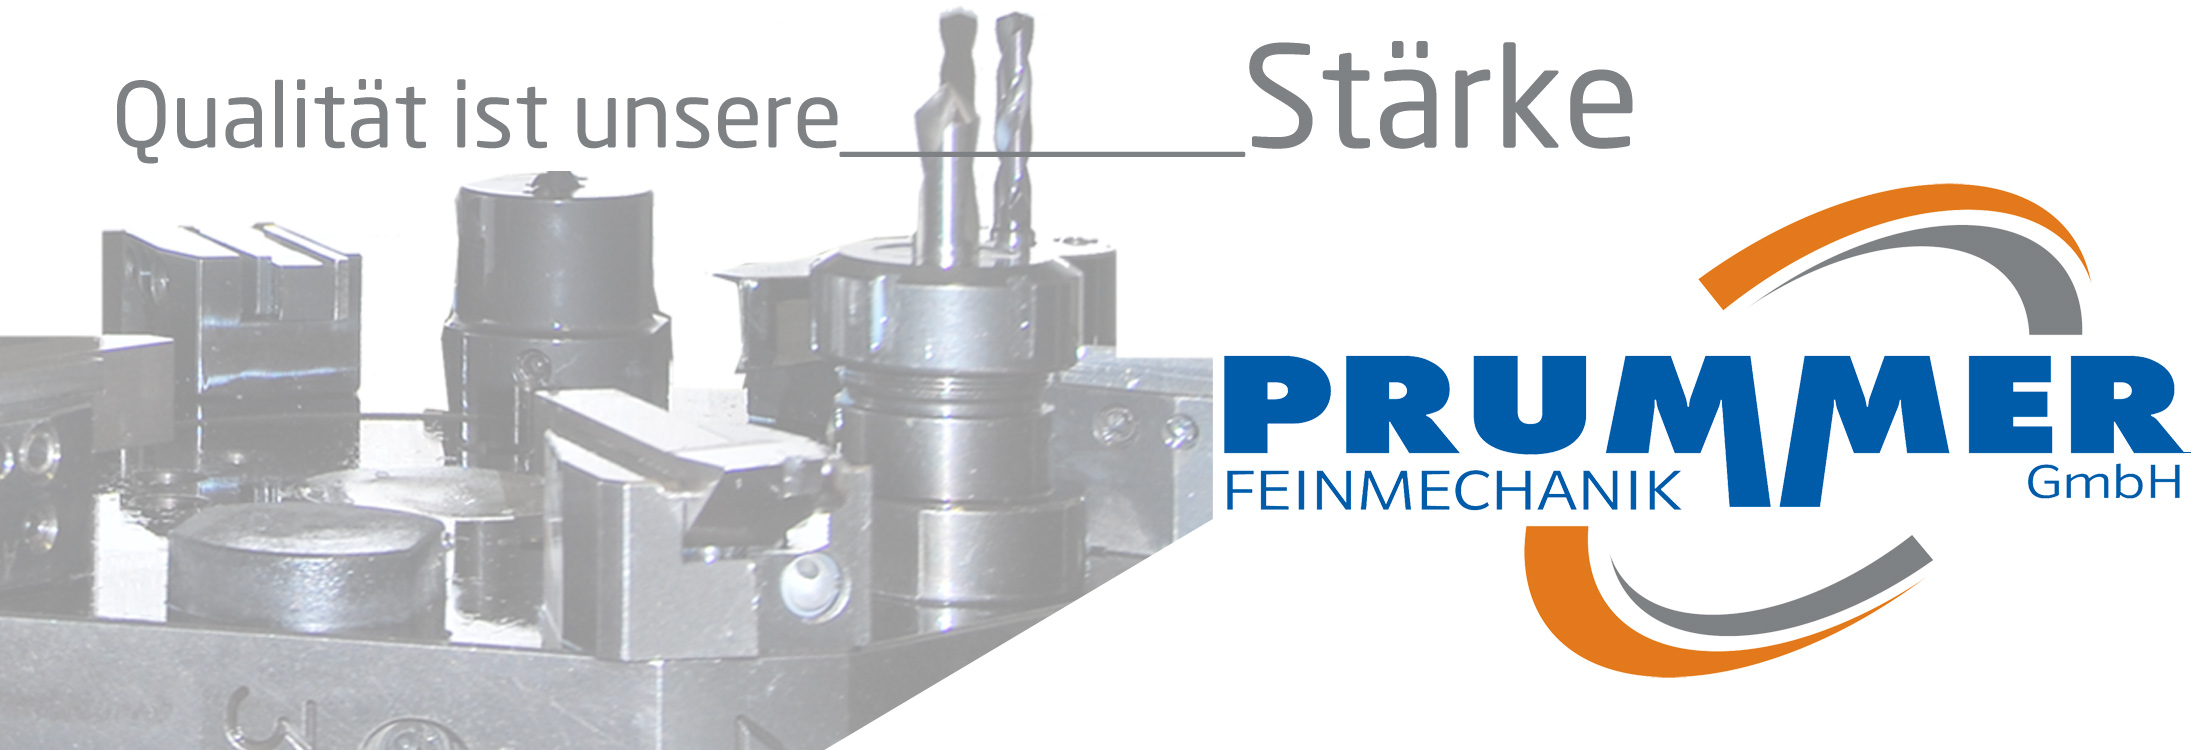 Prummer Feinmechanik GmbH Qualität ist unsere Stärke